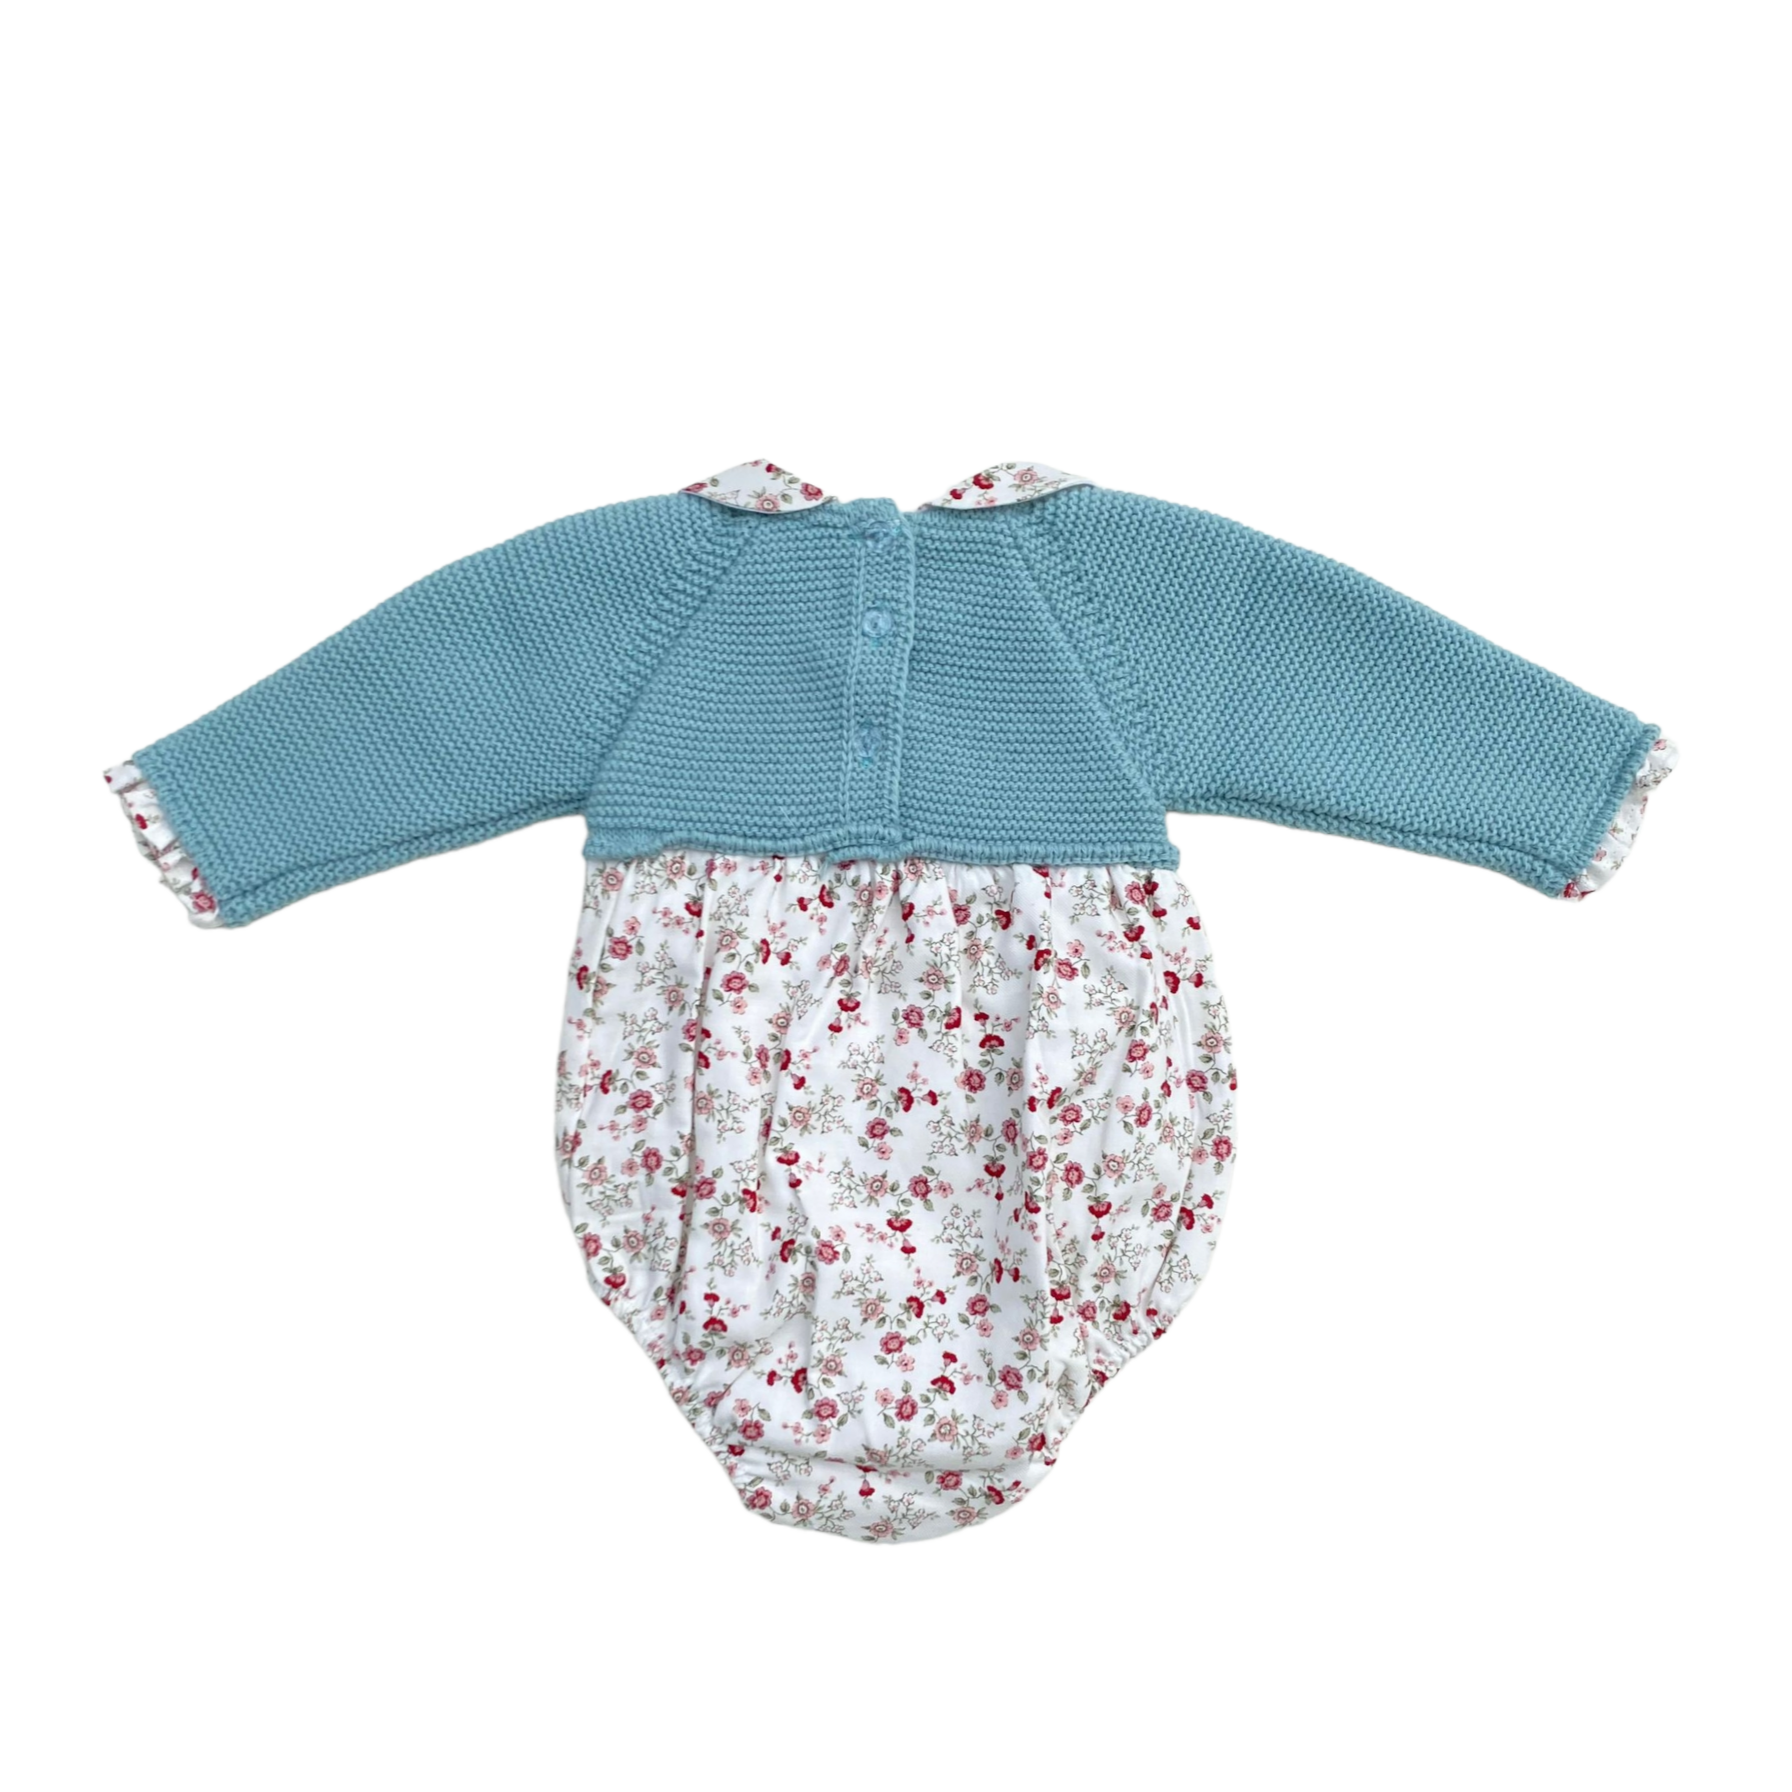 Pagliaccetto In Caldo Cotone Neonata BABY FASHION 525.6 - Baby Fashion - LuxuryKids